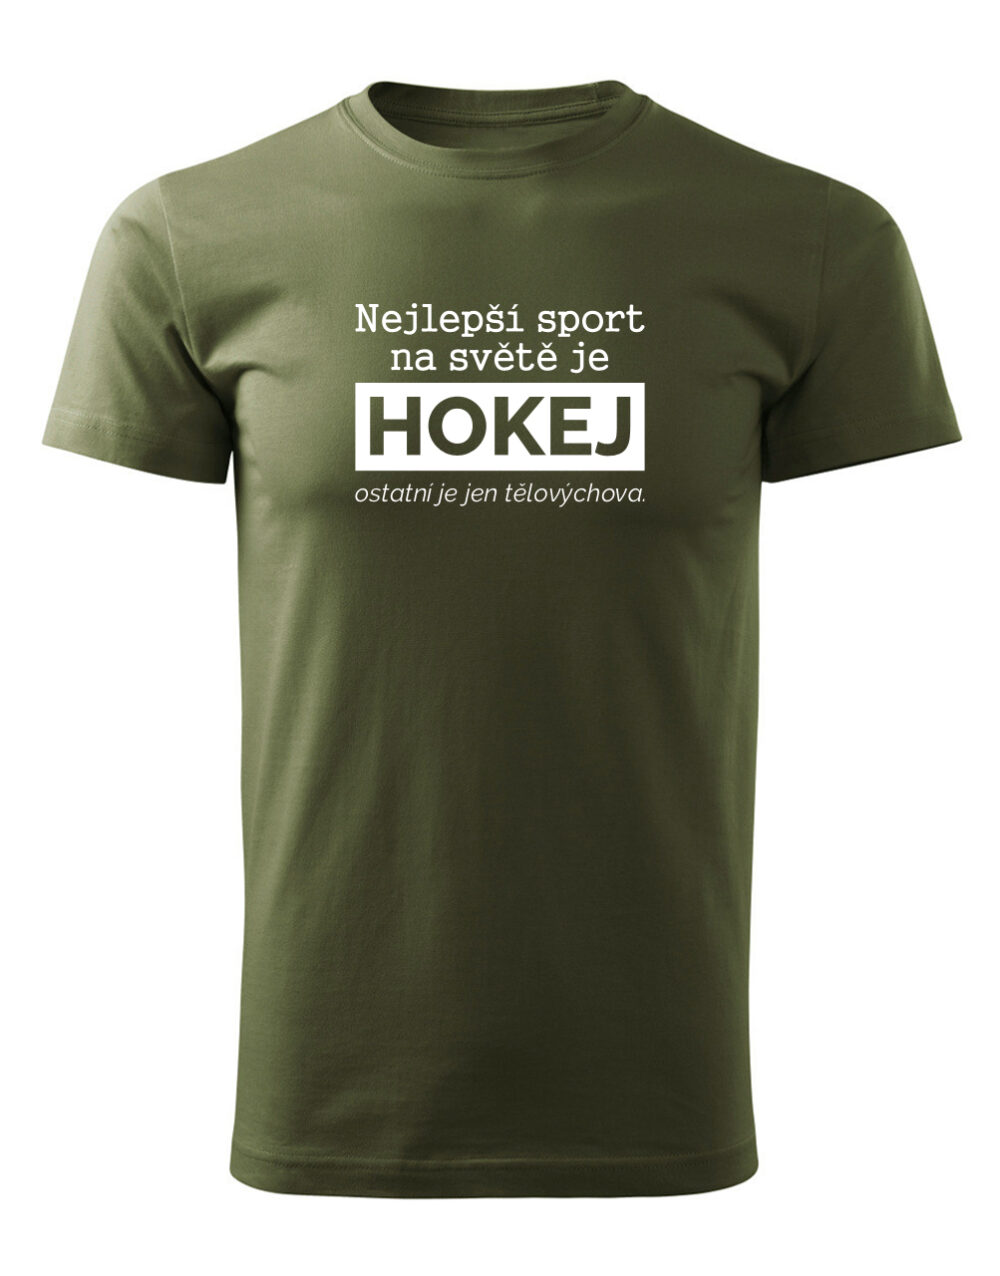 Pánské tričko s potiskem Nejlepší sport je hokej vojenská zelená